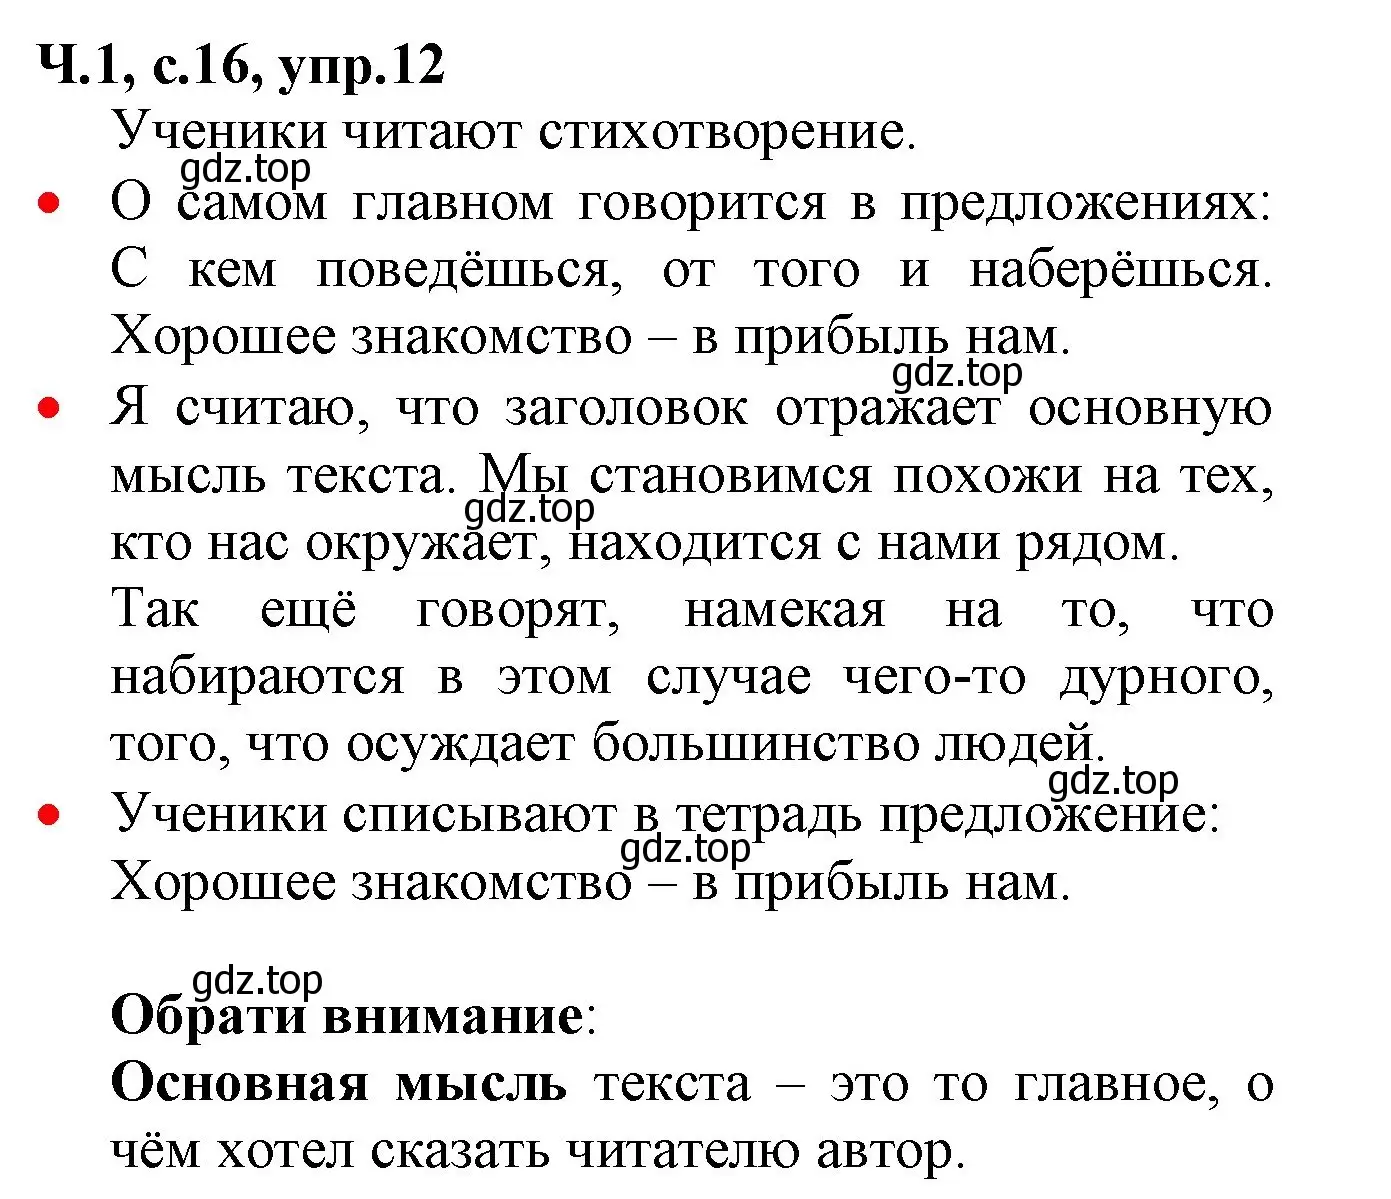 Решение номер 12 (страница 16) гдз по русскому языку 2 класс Канакина, Горецкий, учебник 1 часть